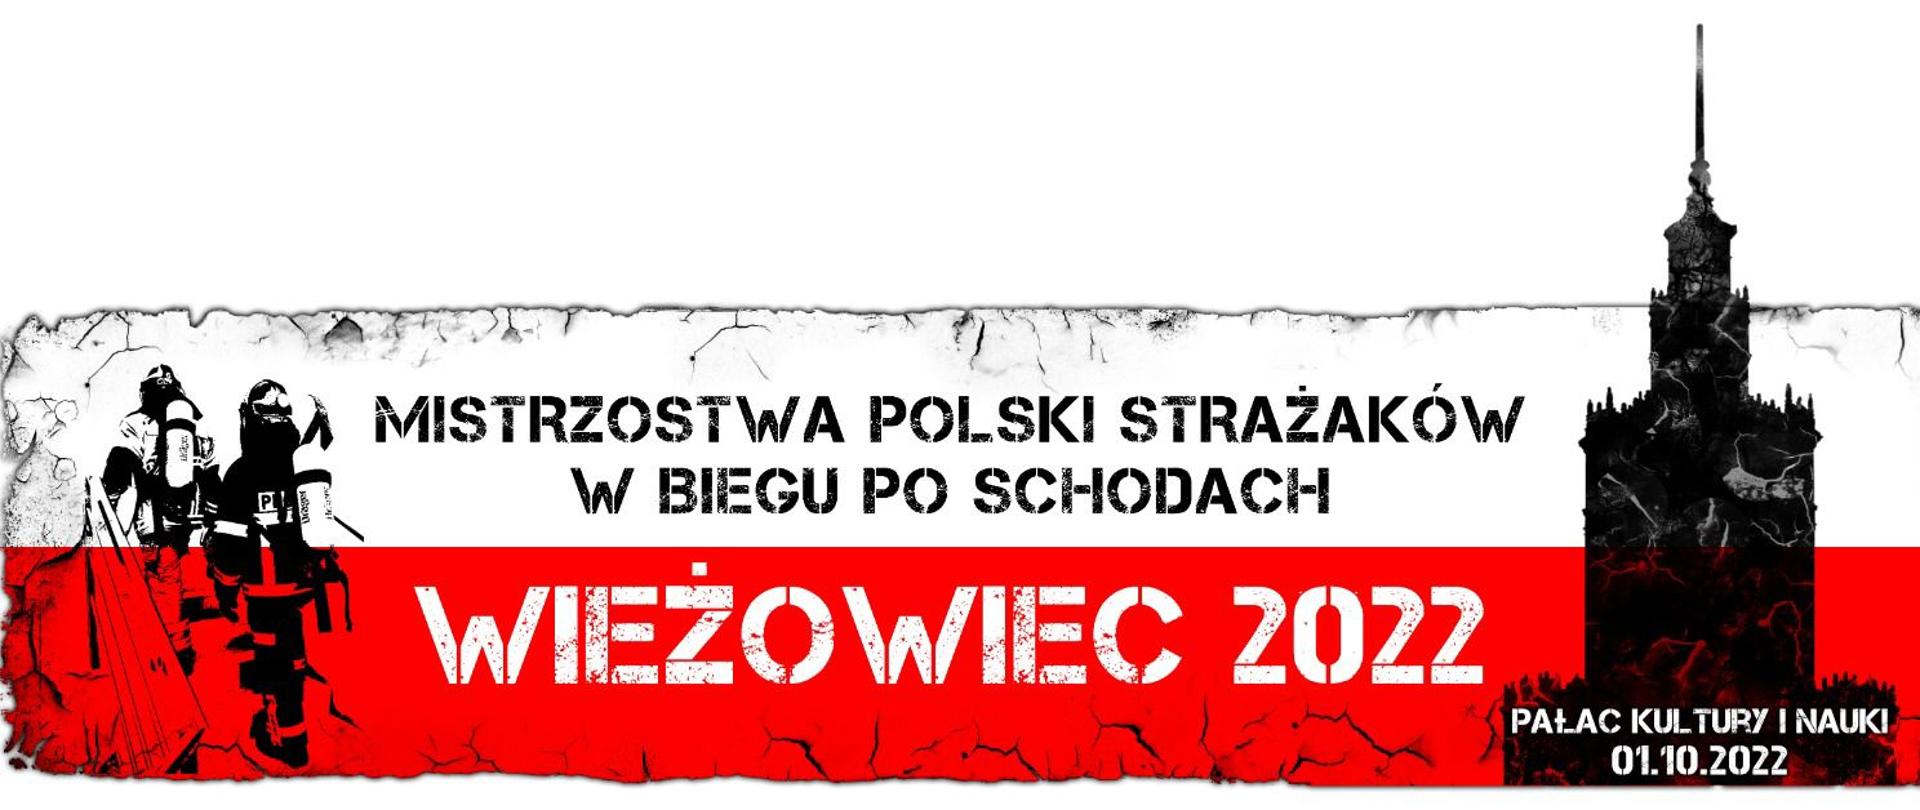 IV Mistrzostwa Polski Strażaków w Biegu po Schodach - Wieżowiec 2022